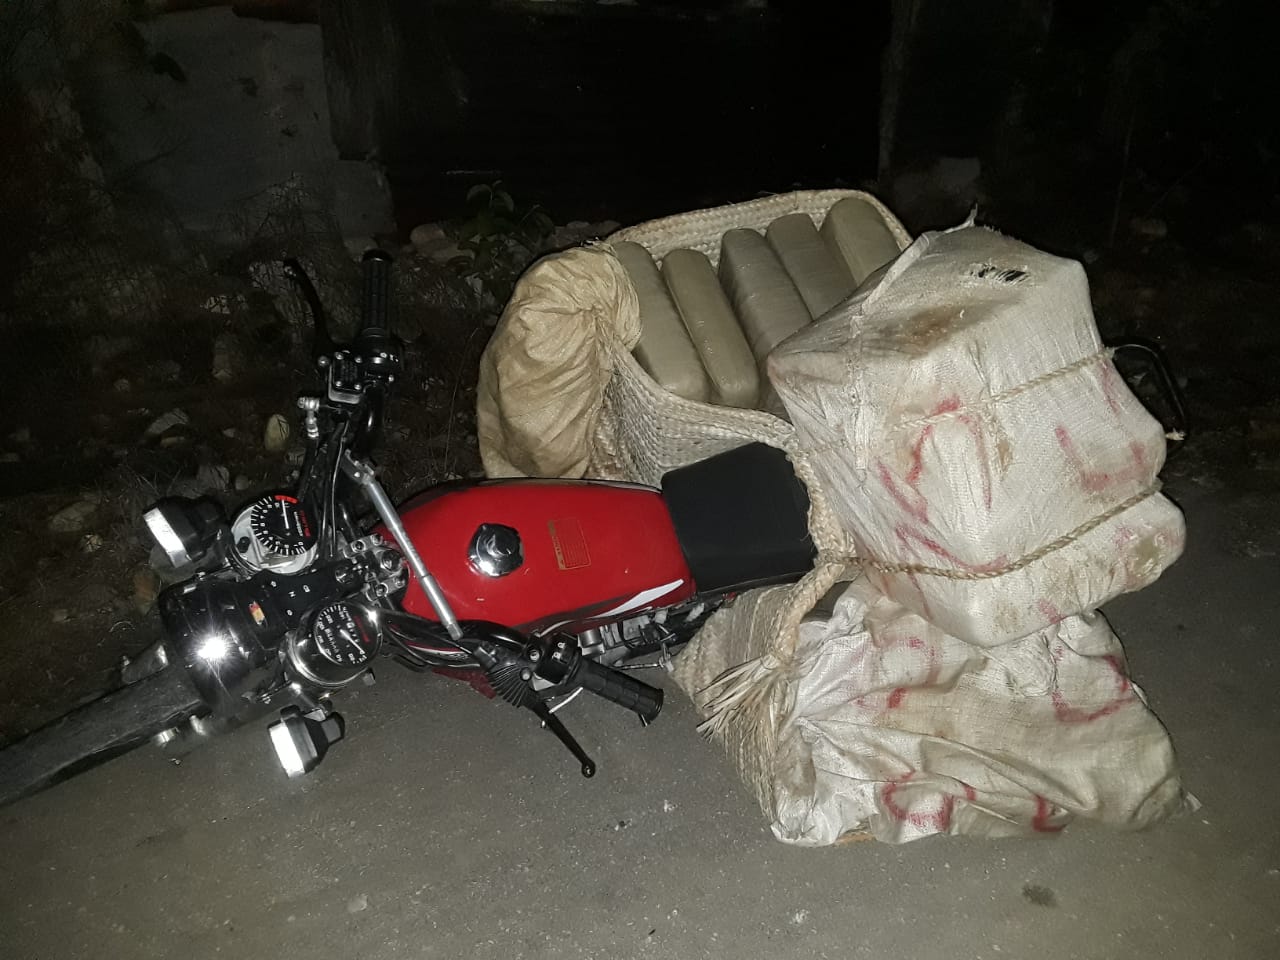 Traficante huye y abandona motocicleta con 14 paquetes de marihuana